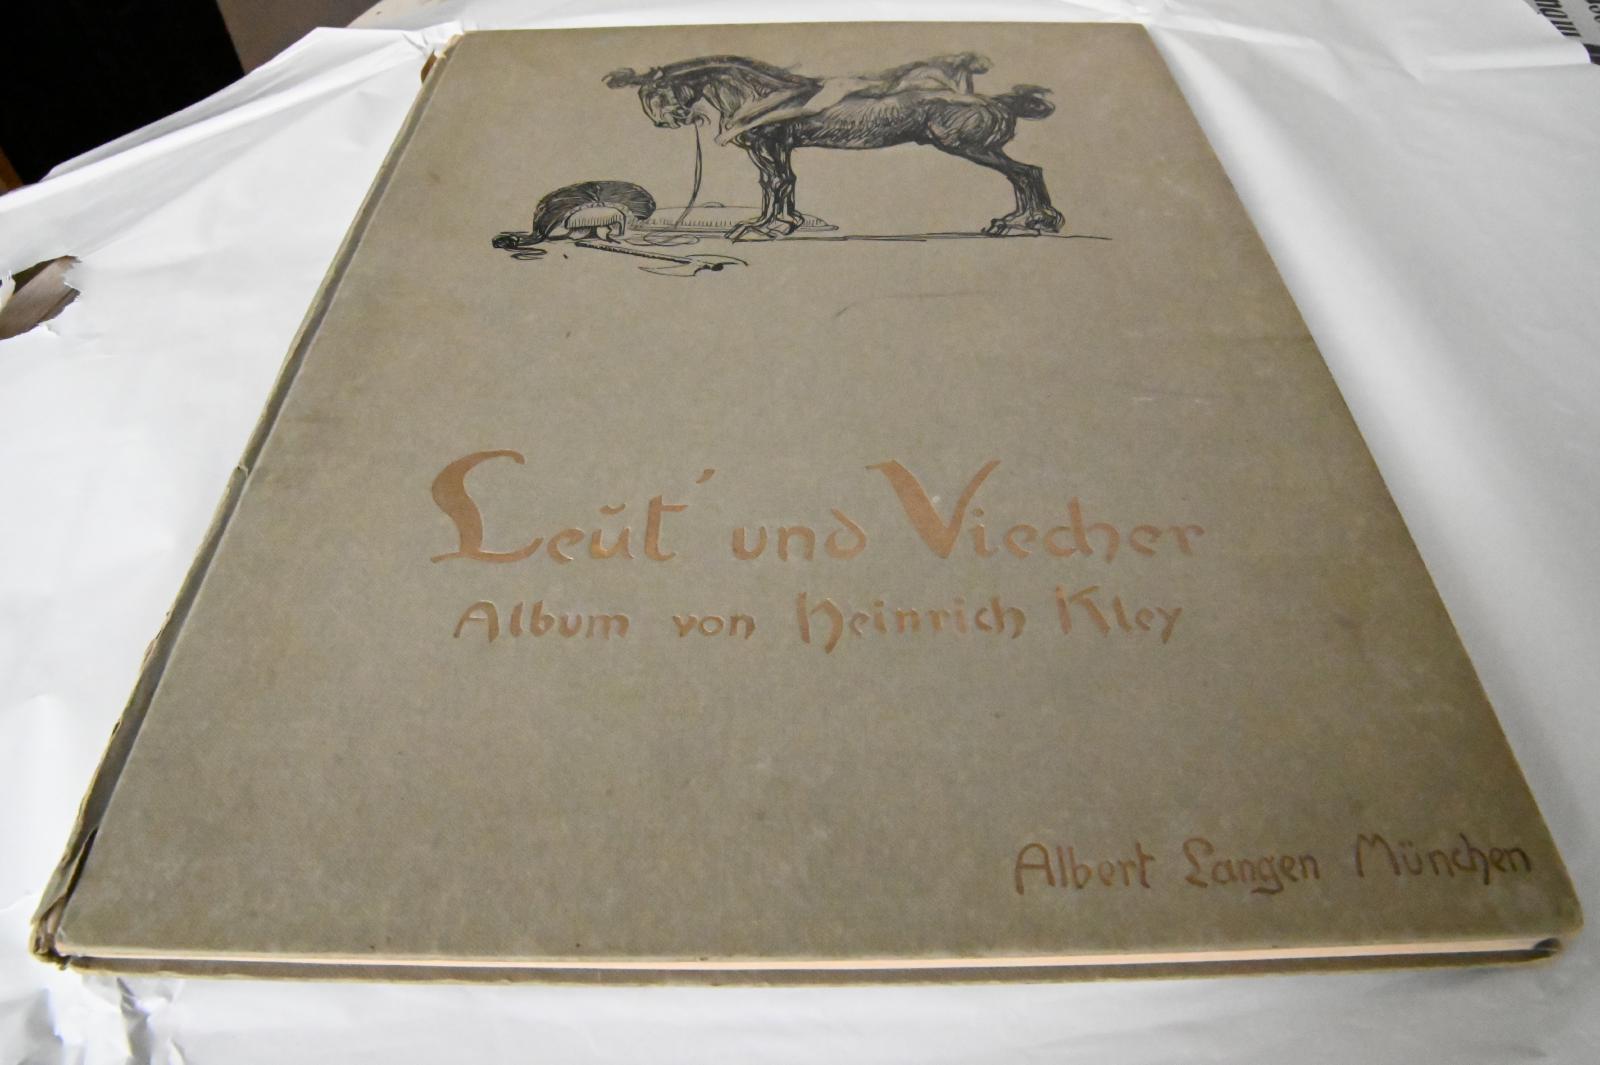 Photo of the book Leut und Viecher